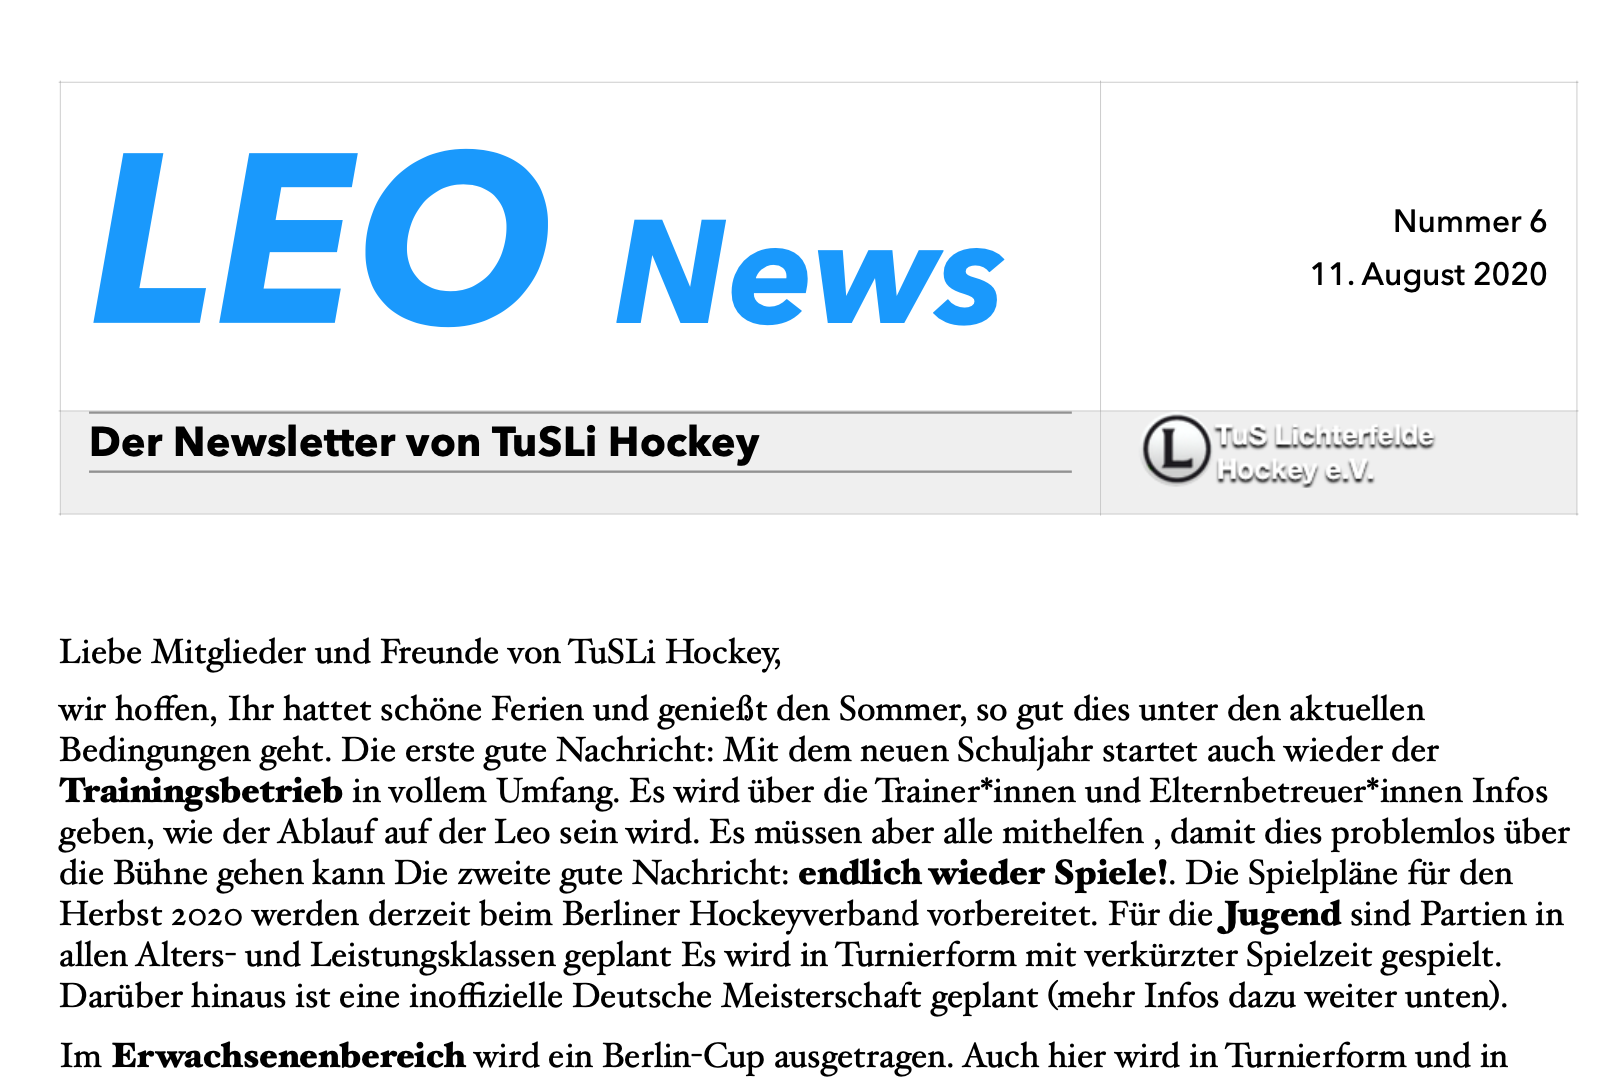 LEO News 6: Neuigkeiten rund um den Trainings- und Spielbetrieb sowie zum Start der 2. Bundesliga